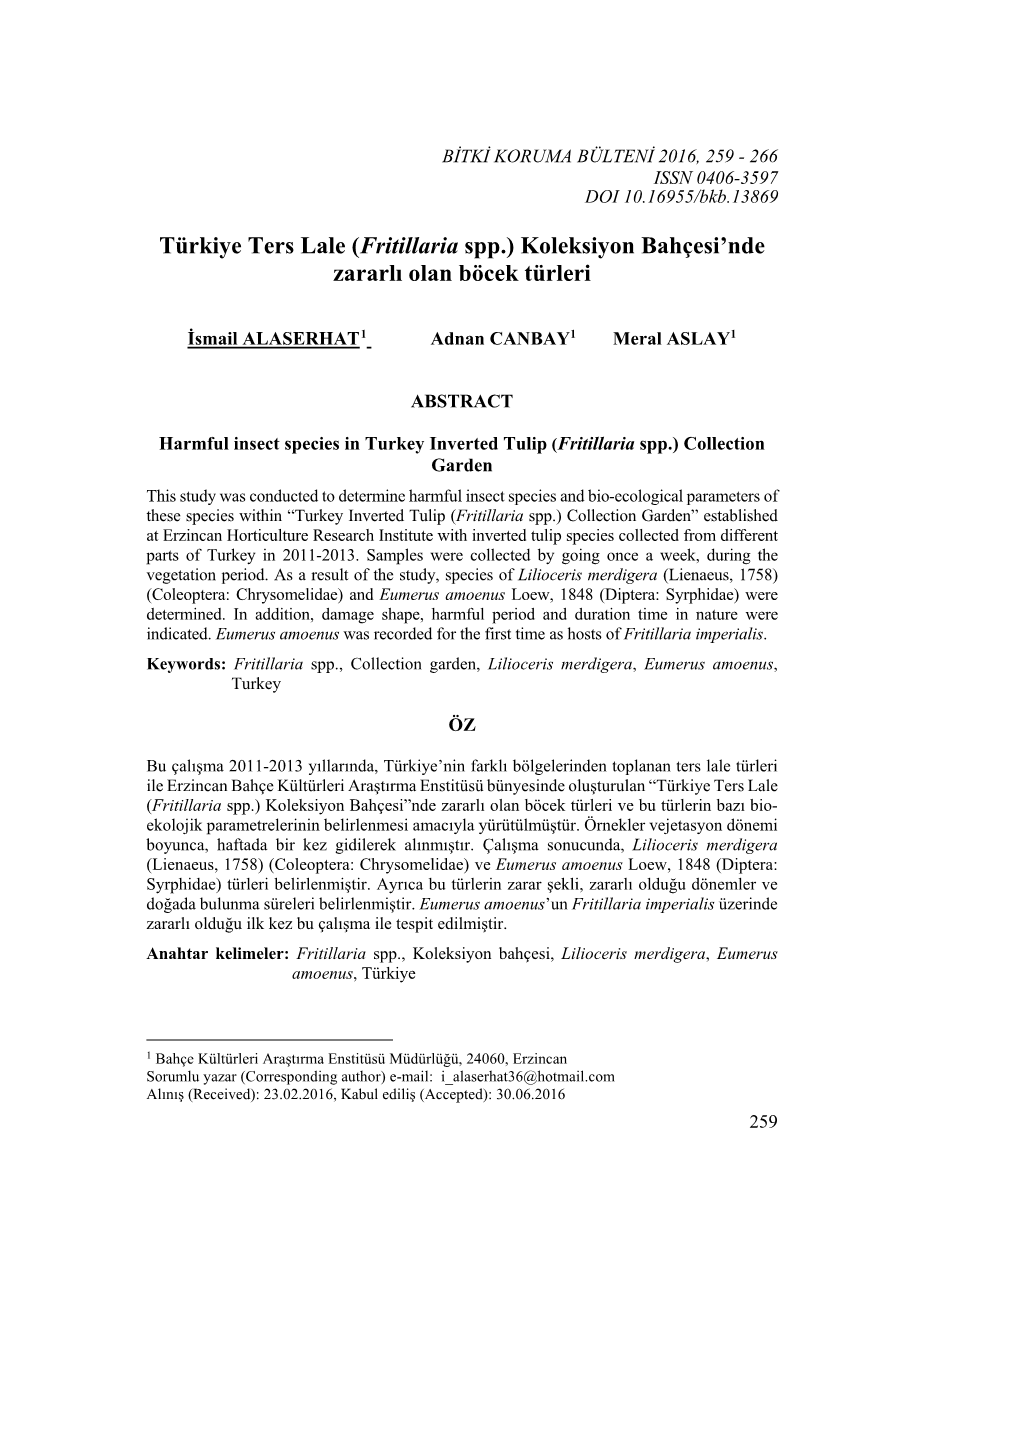 Türkiye Ters Lale (Fritillaria Spp.) Koleksiyon Bahçesi’Nde Zararlı Olan Böcek Türleri